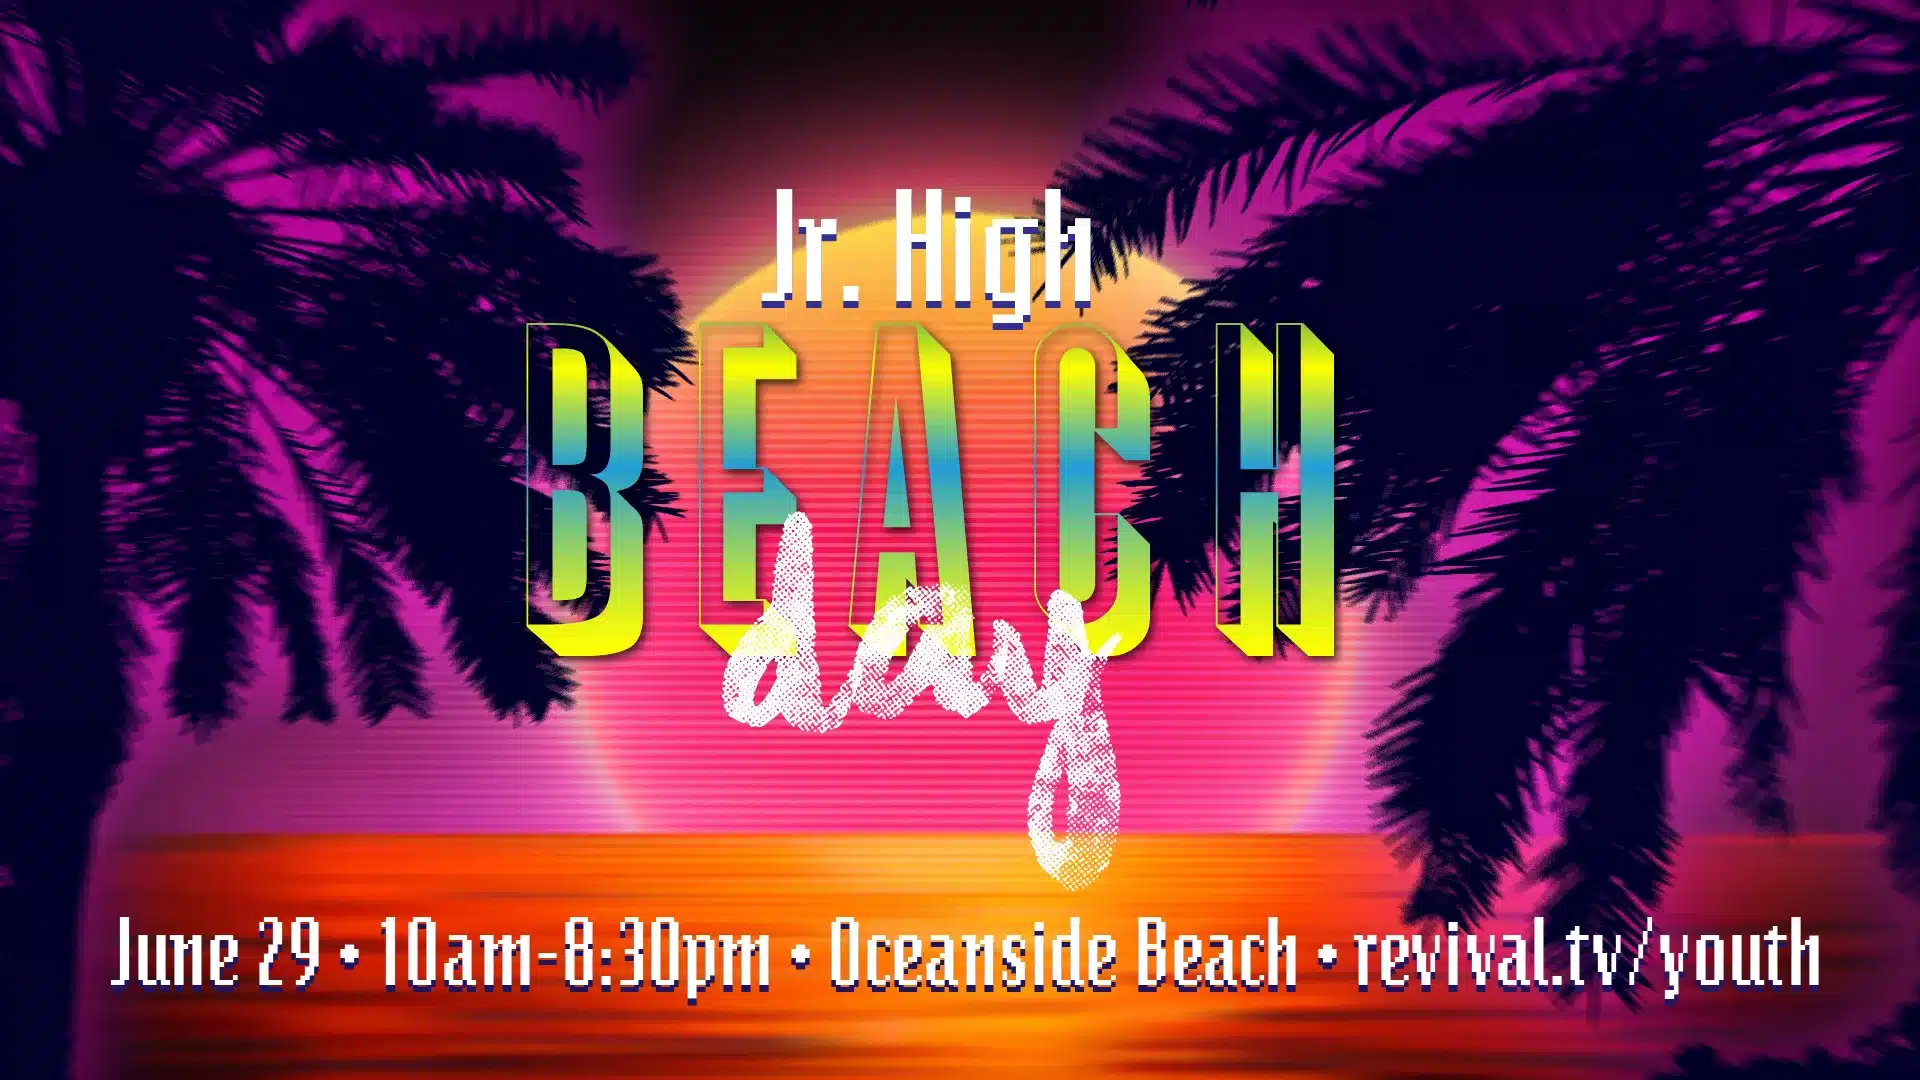 Jr. High Beach Trip